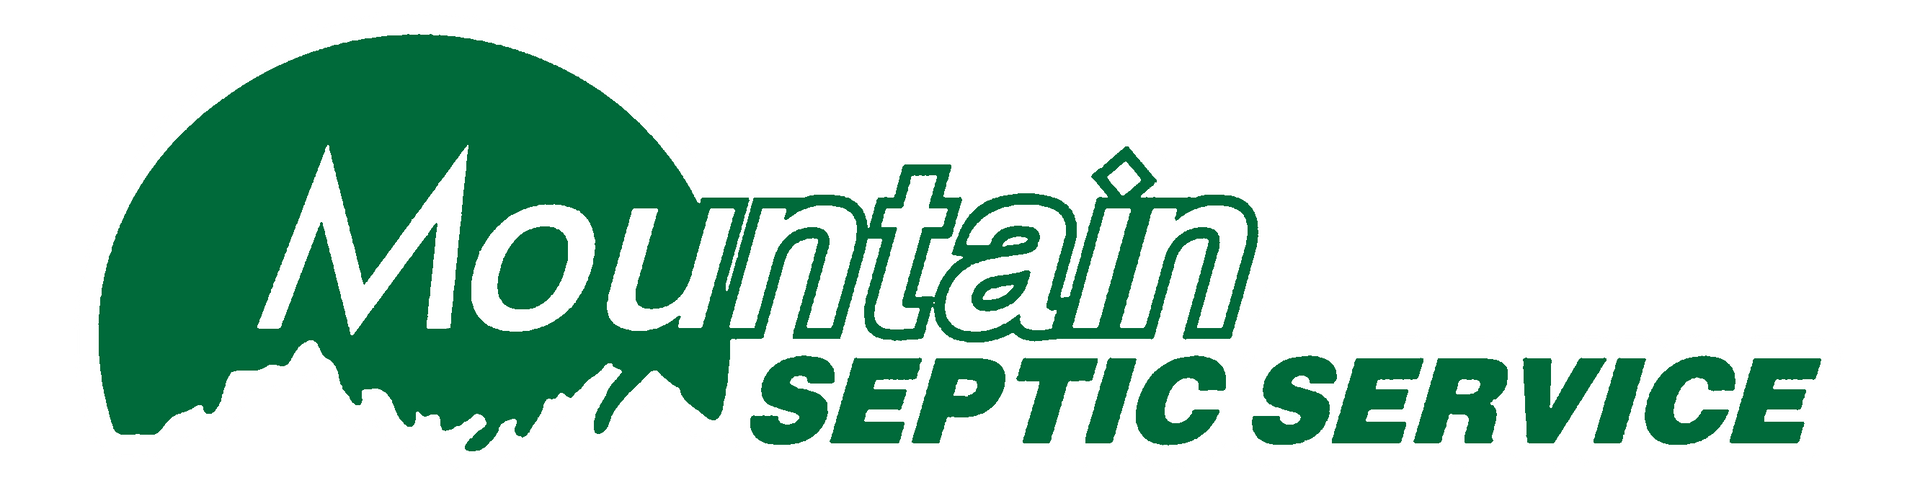 Mountain Septic Service Logo